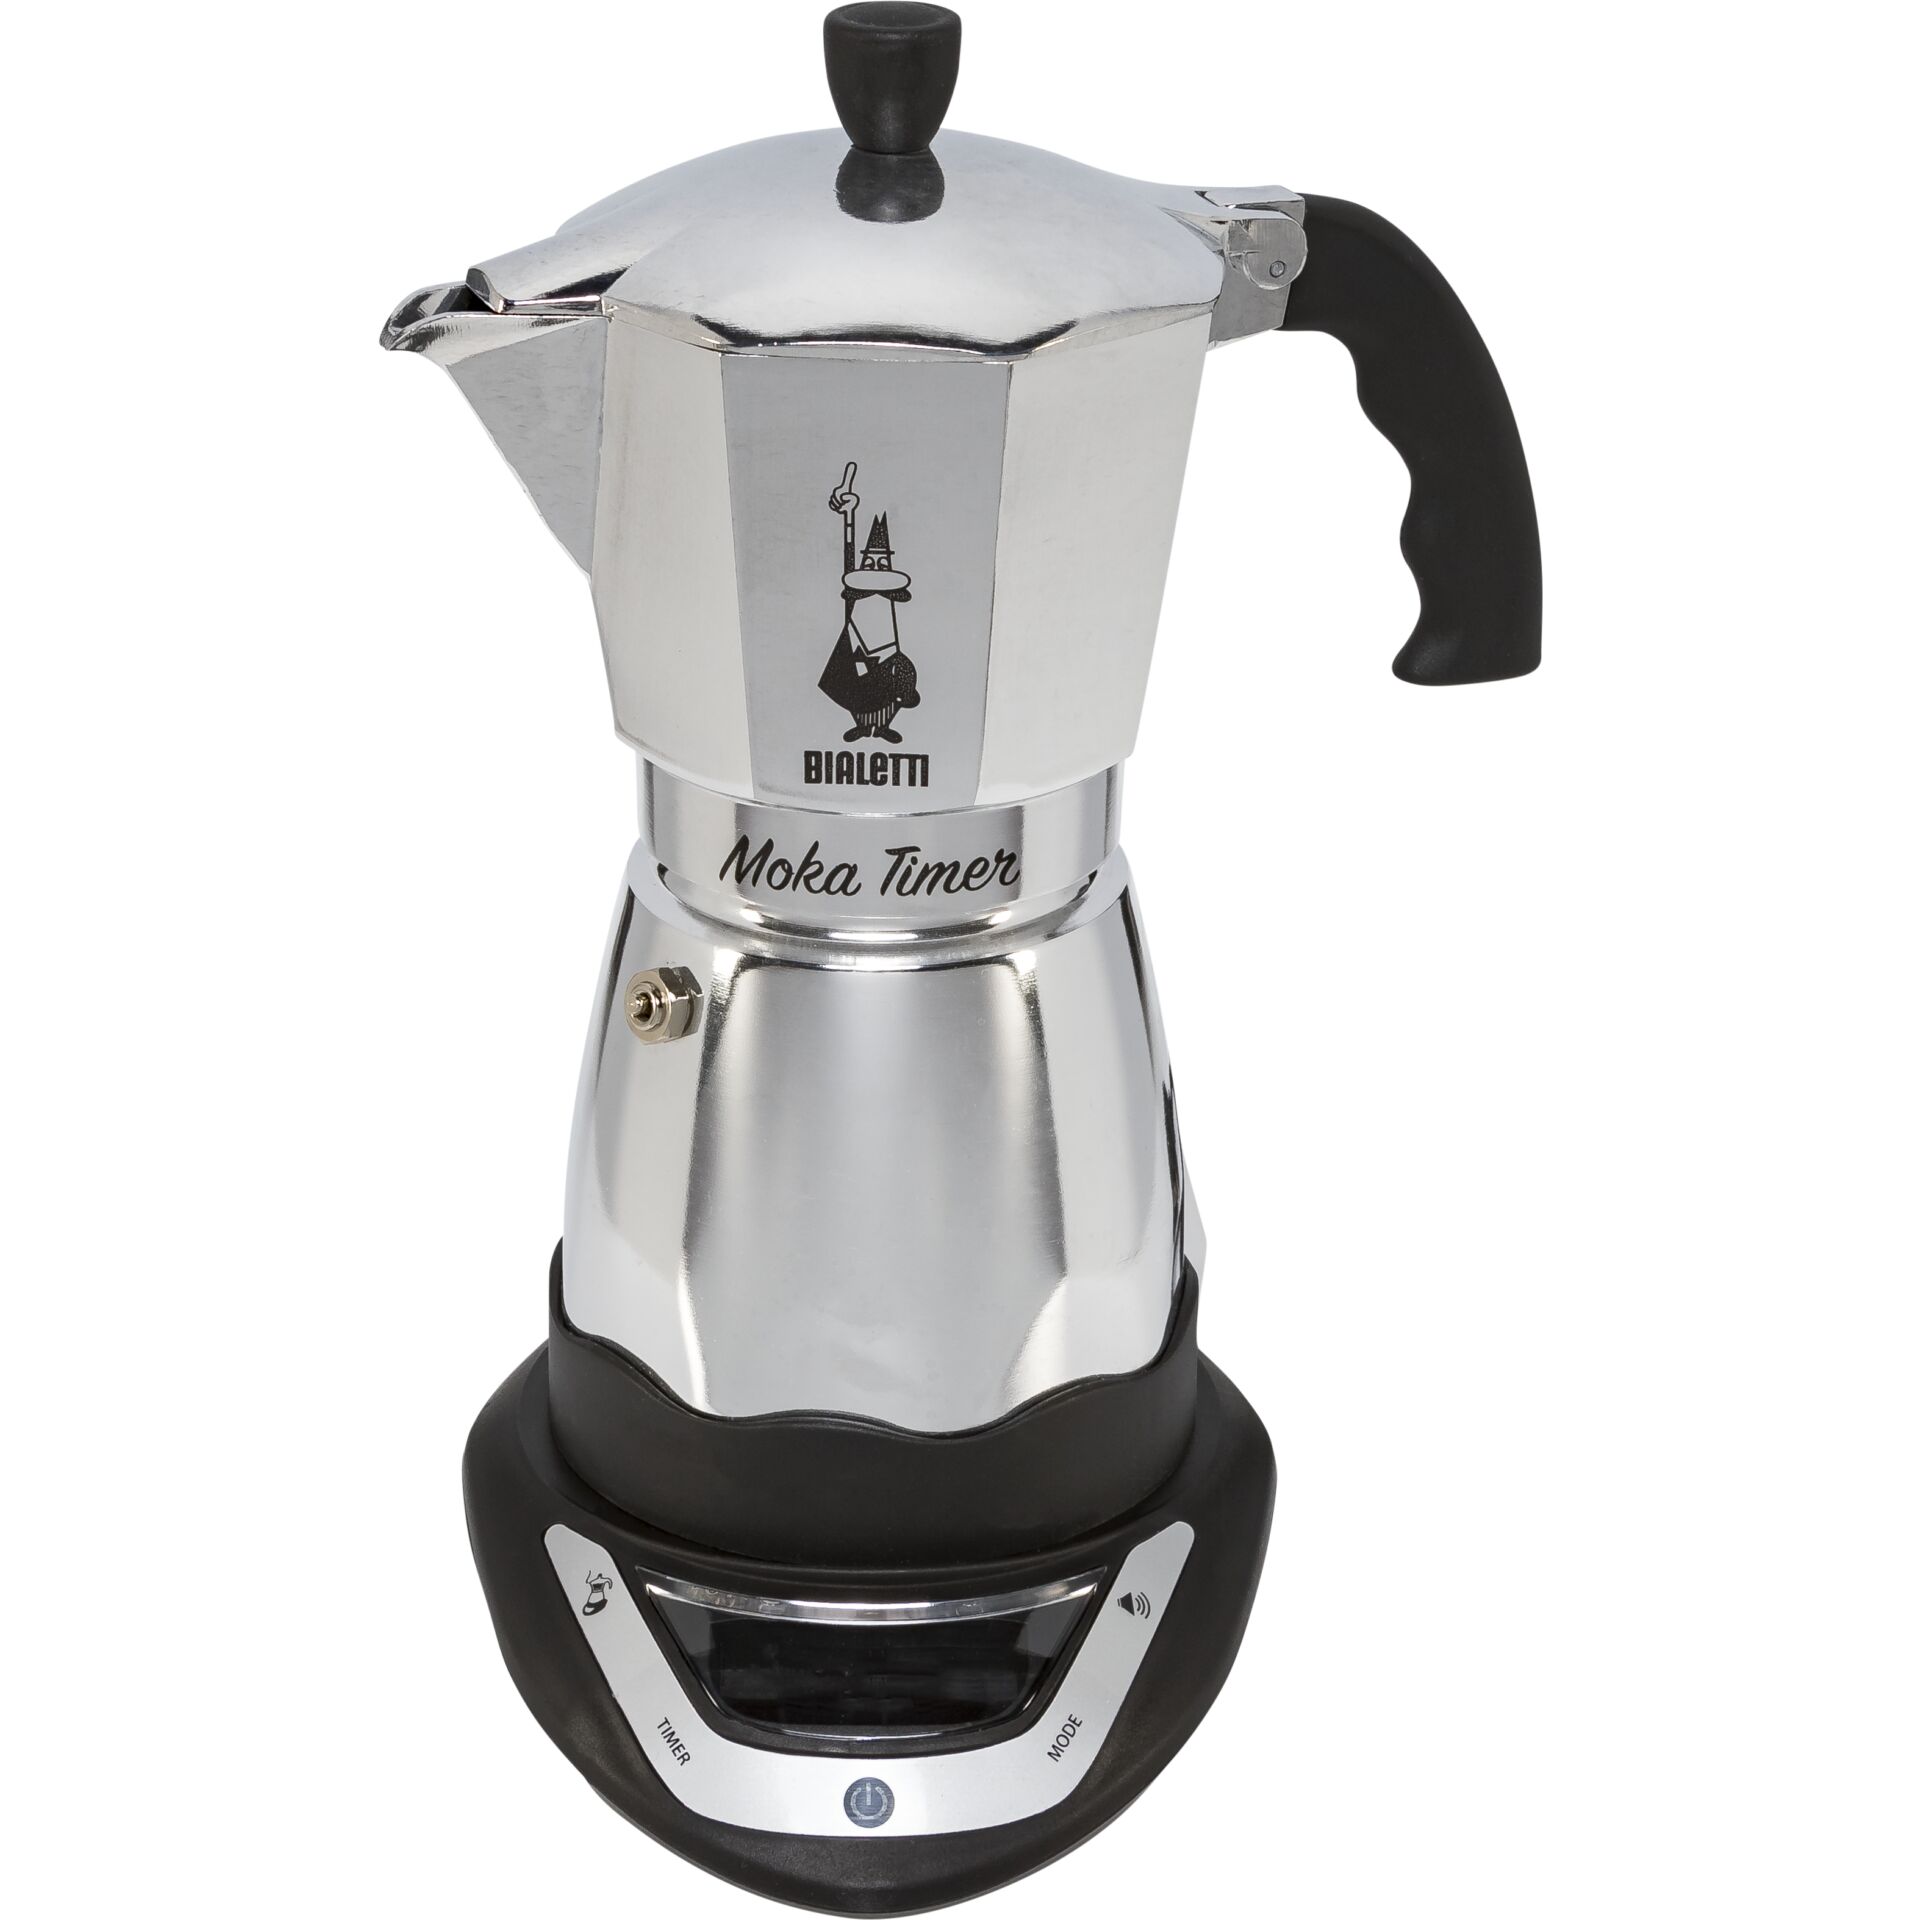 Bialetti Moka Timer, Espressomaschine silber/schwarz, 6 Tassen Kapazität: 6 Tassen/0,27 Liter